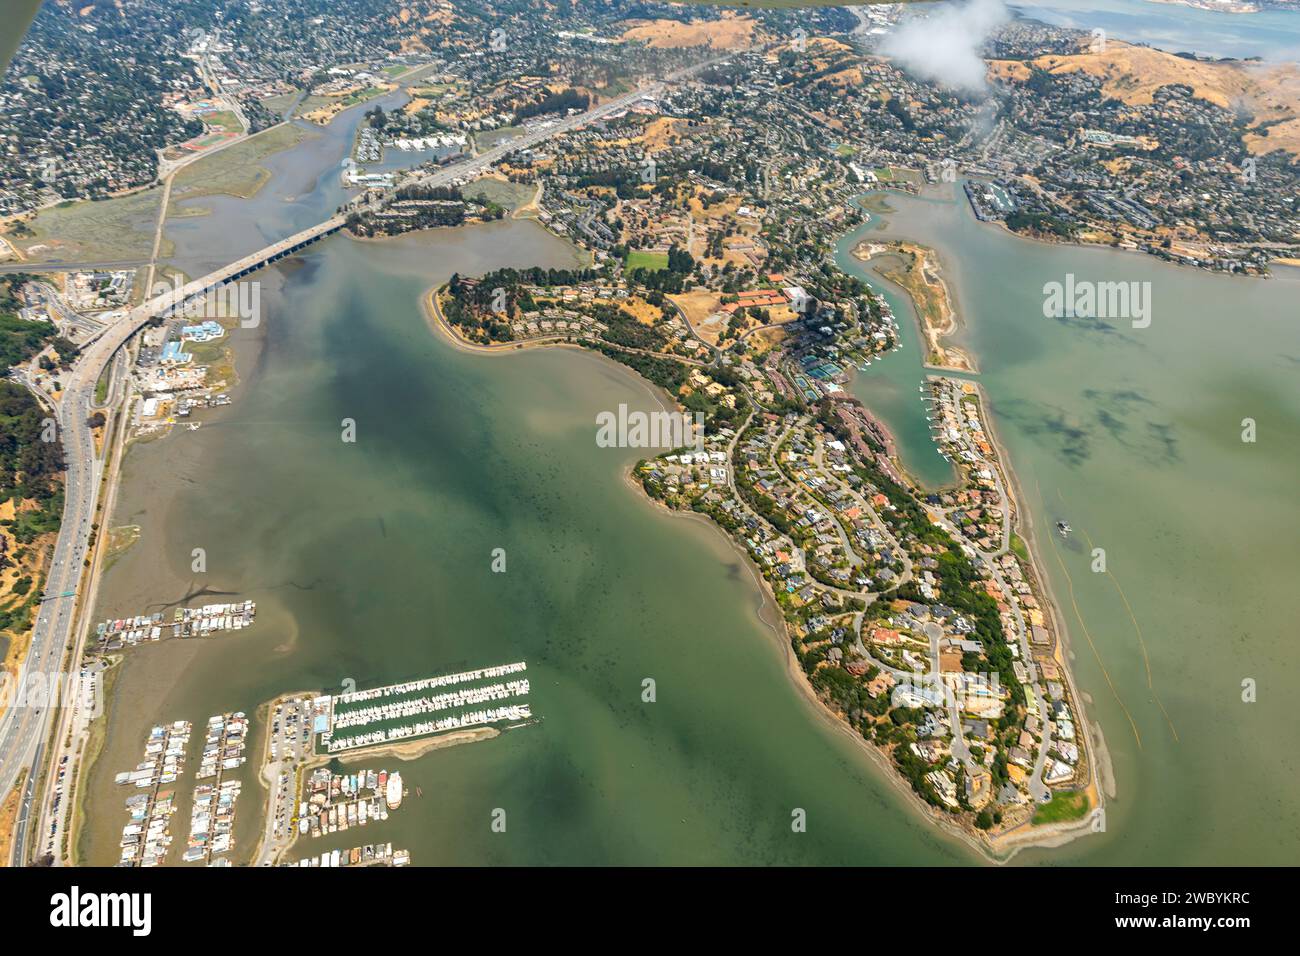 Vue aérienne des maisons de la péninsule de Tiburon, des marinas et des quais à bateaux Banque D'Images